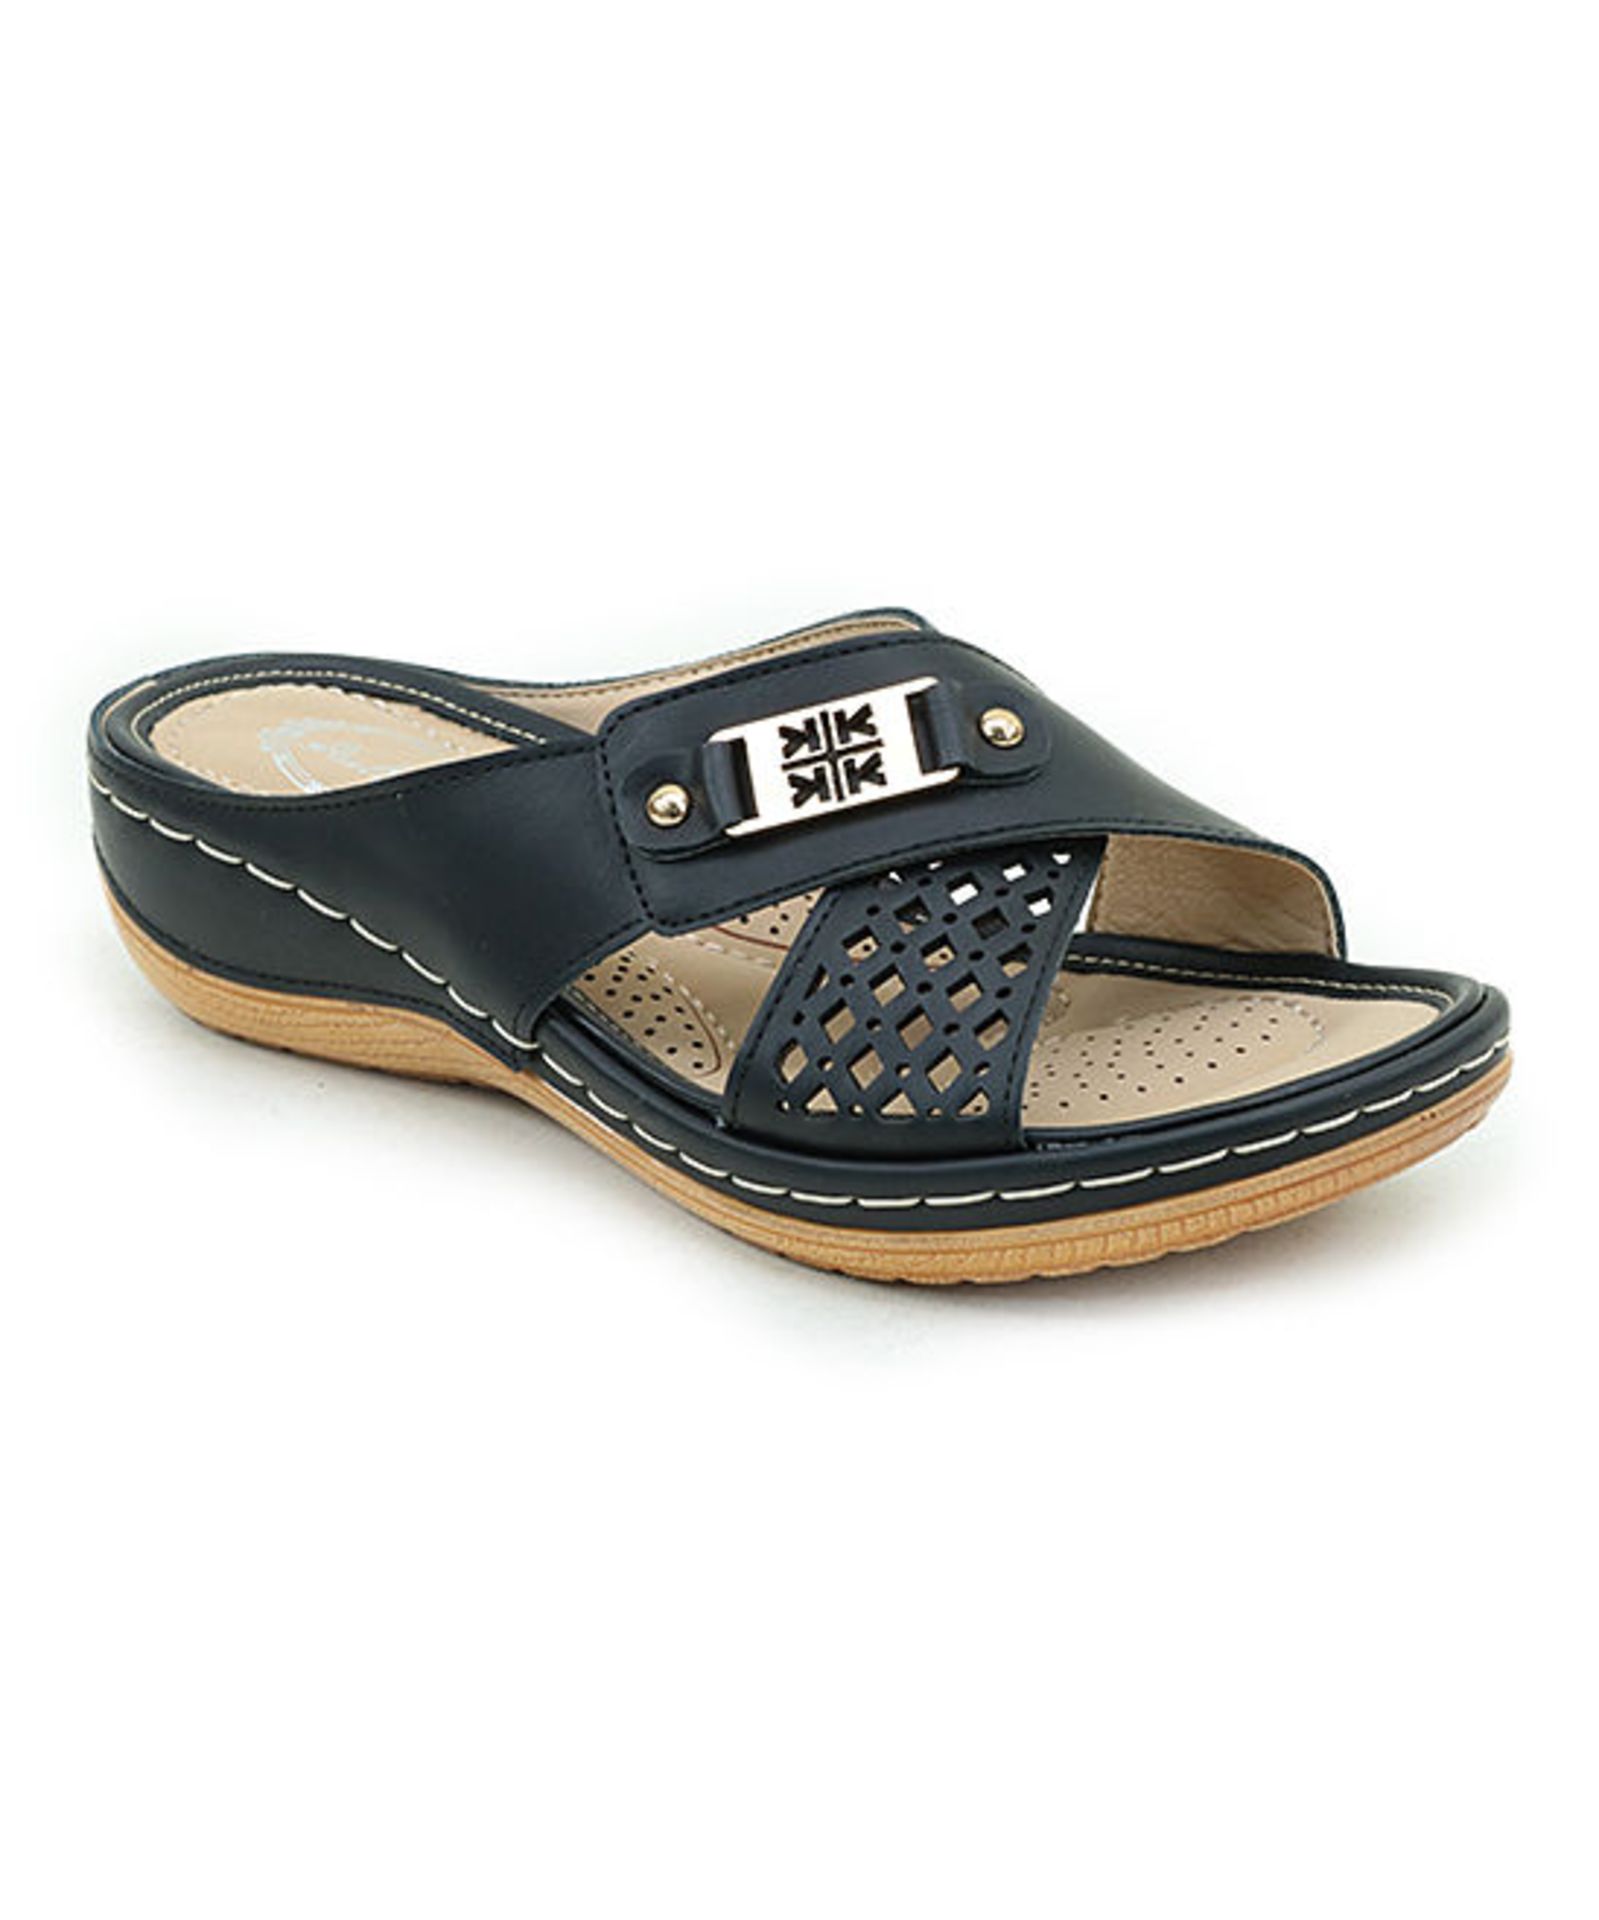 Black Embellished Crisscross Sandal (Uk Size 8:Us Size 10) (New with box) [Ref: 45159993-I-001]